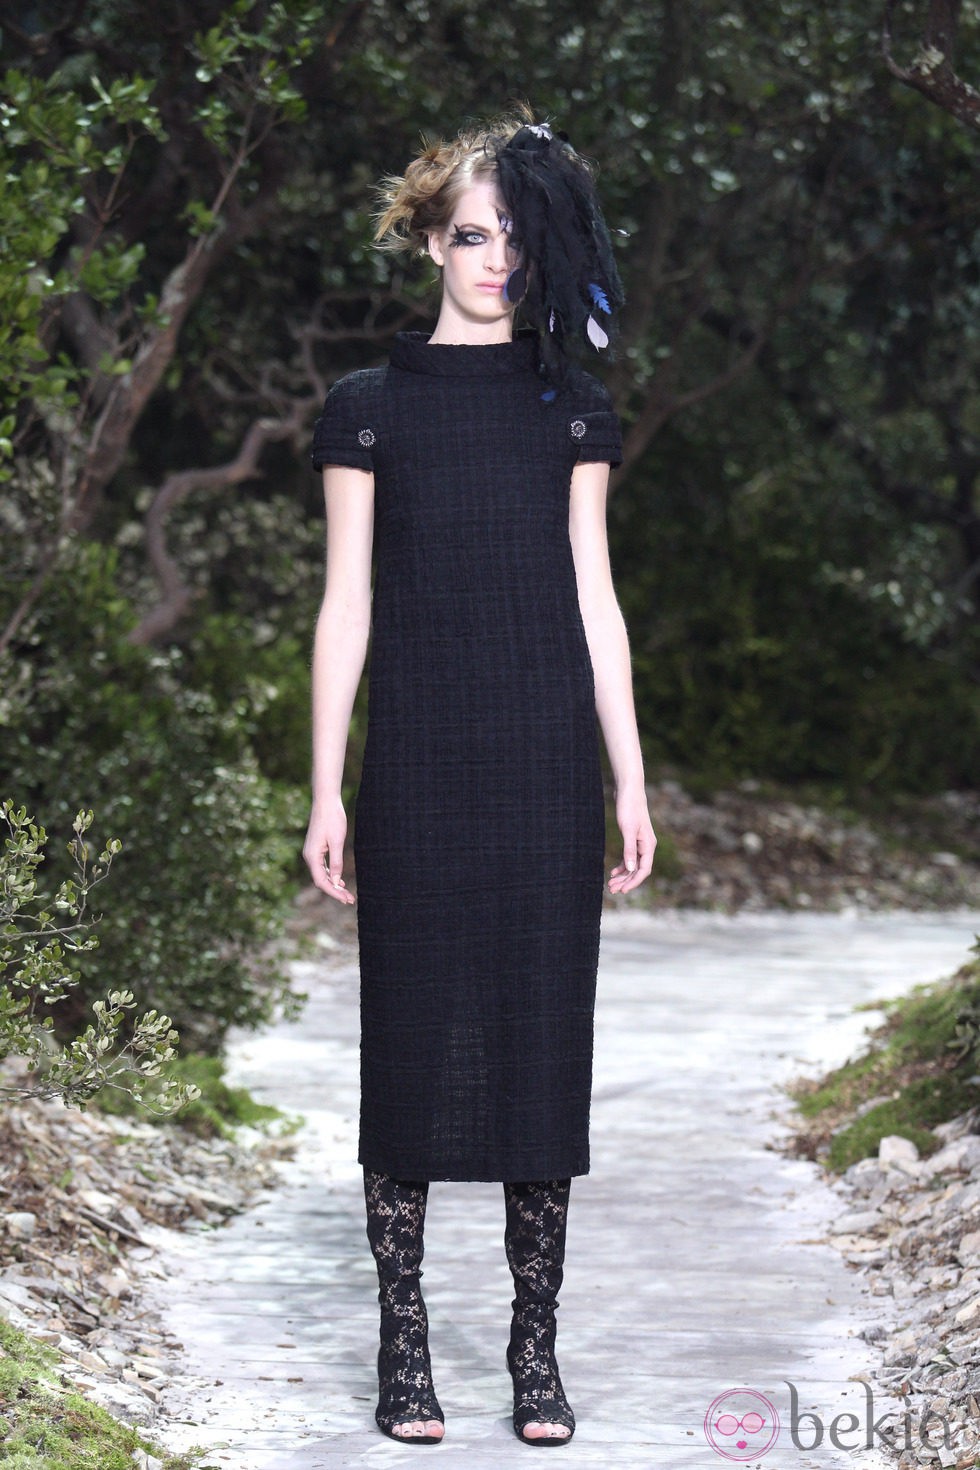 Vestido negro de lana de la colección primavera/verano 2013 de Chanel en la Semana de la Alta Costura de París